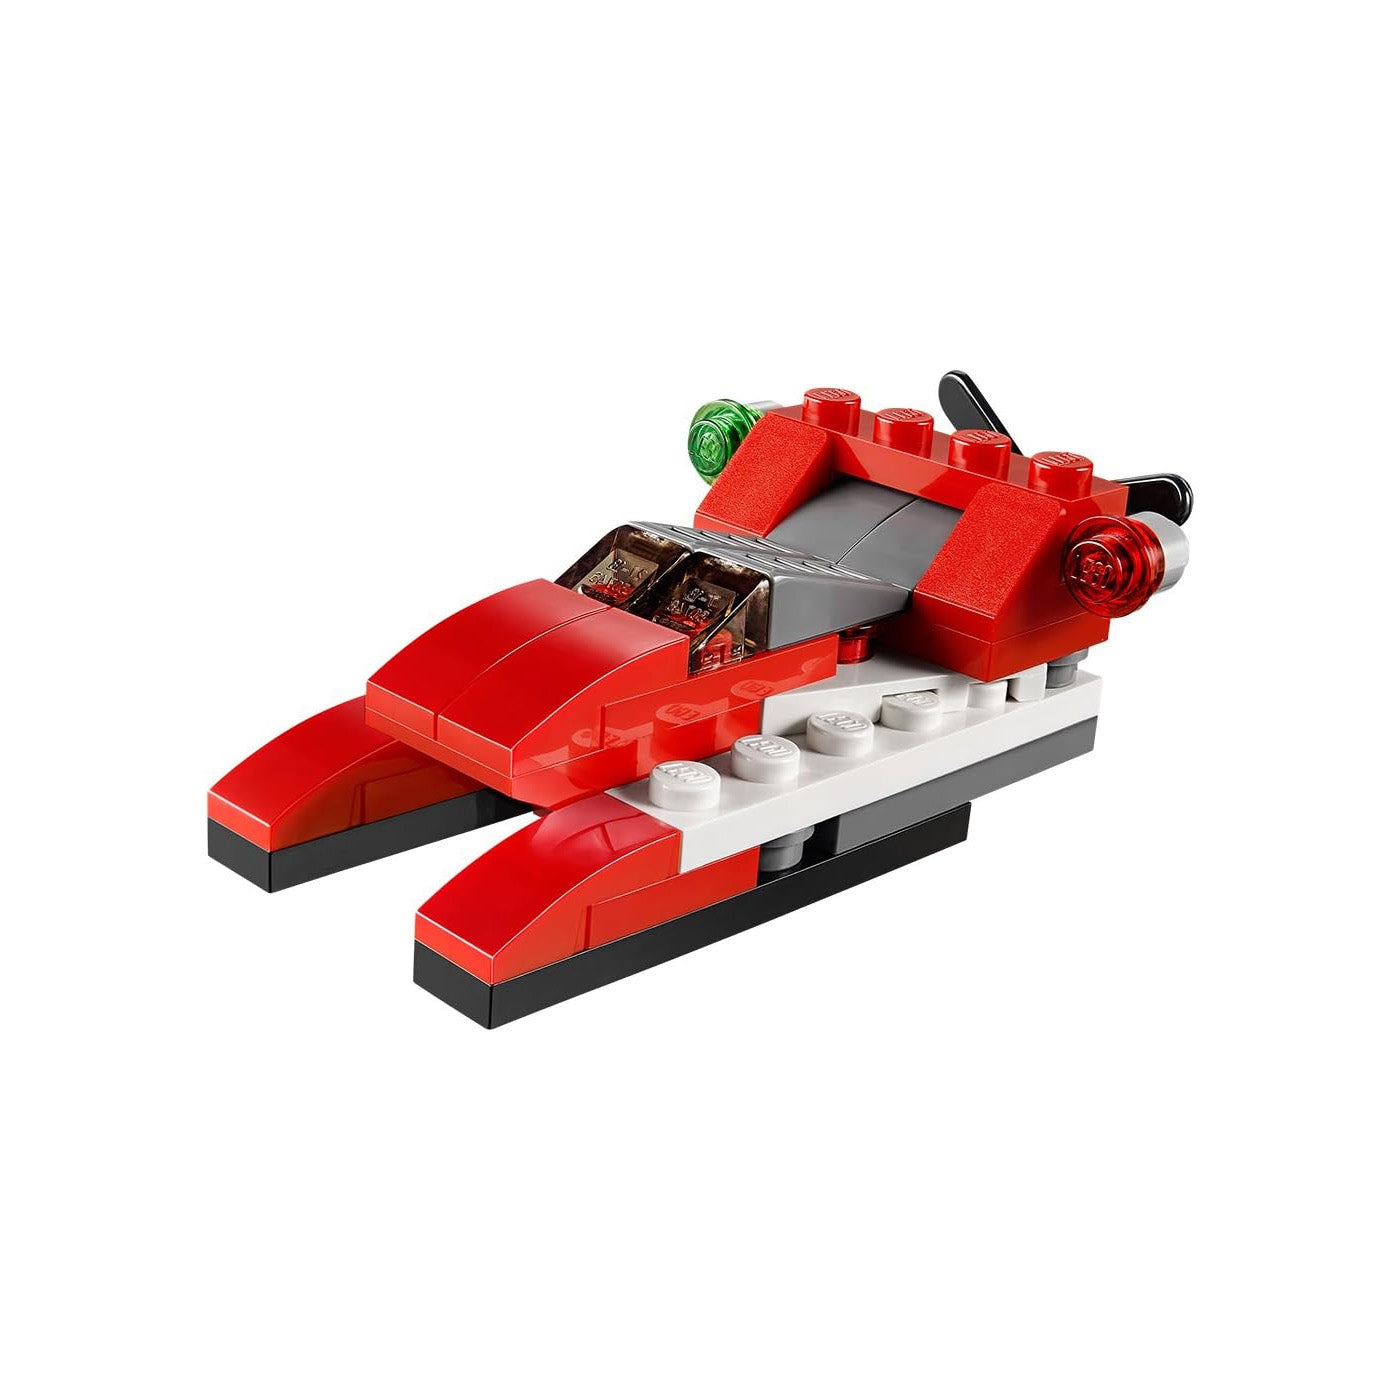 LEGO Creator: Red Thunder Set 31013